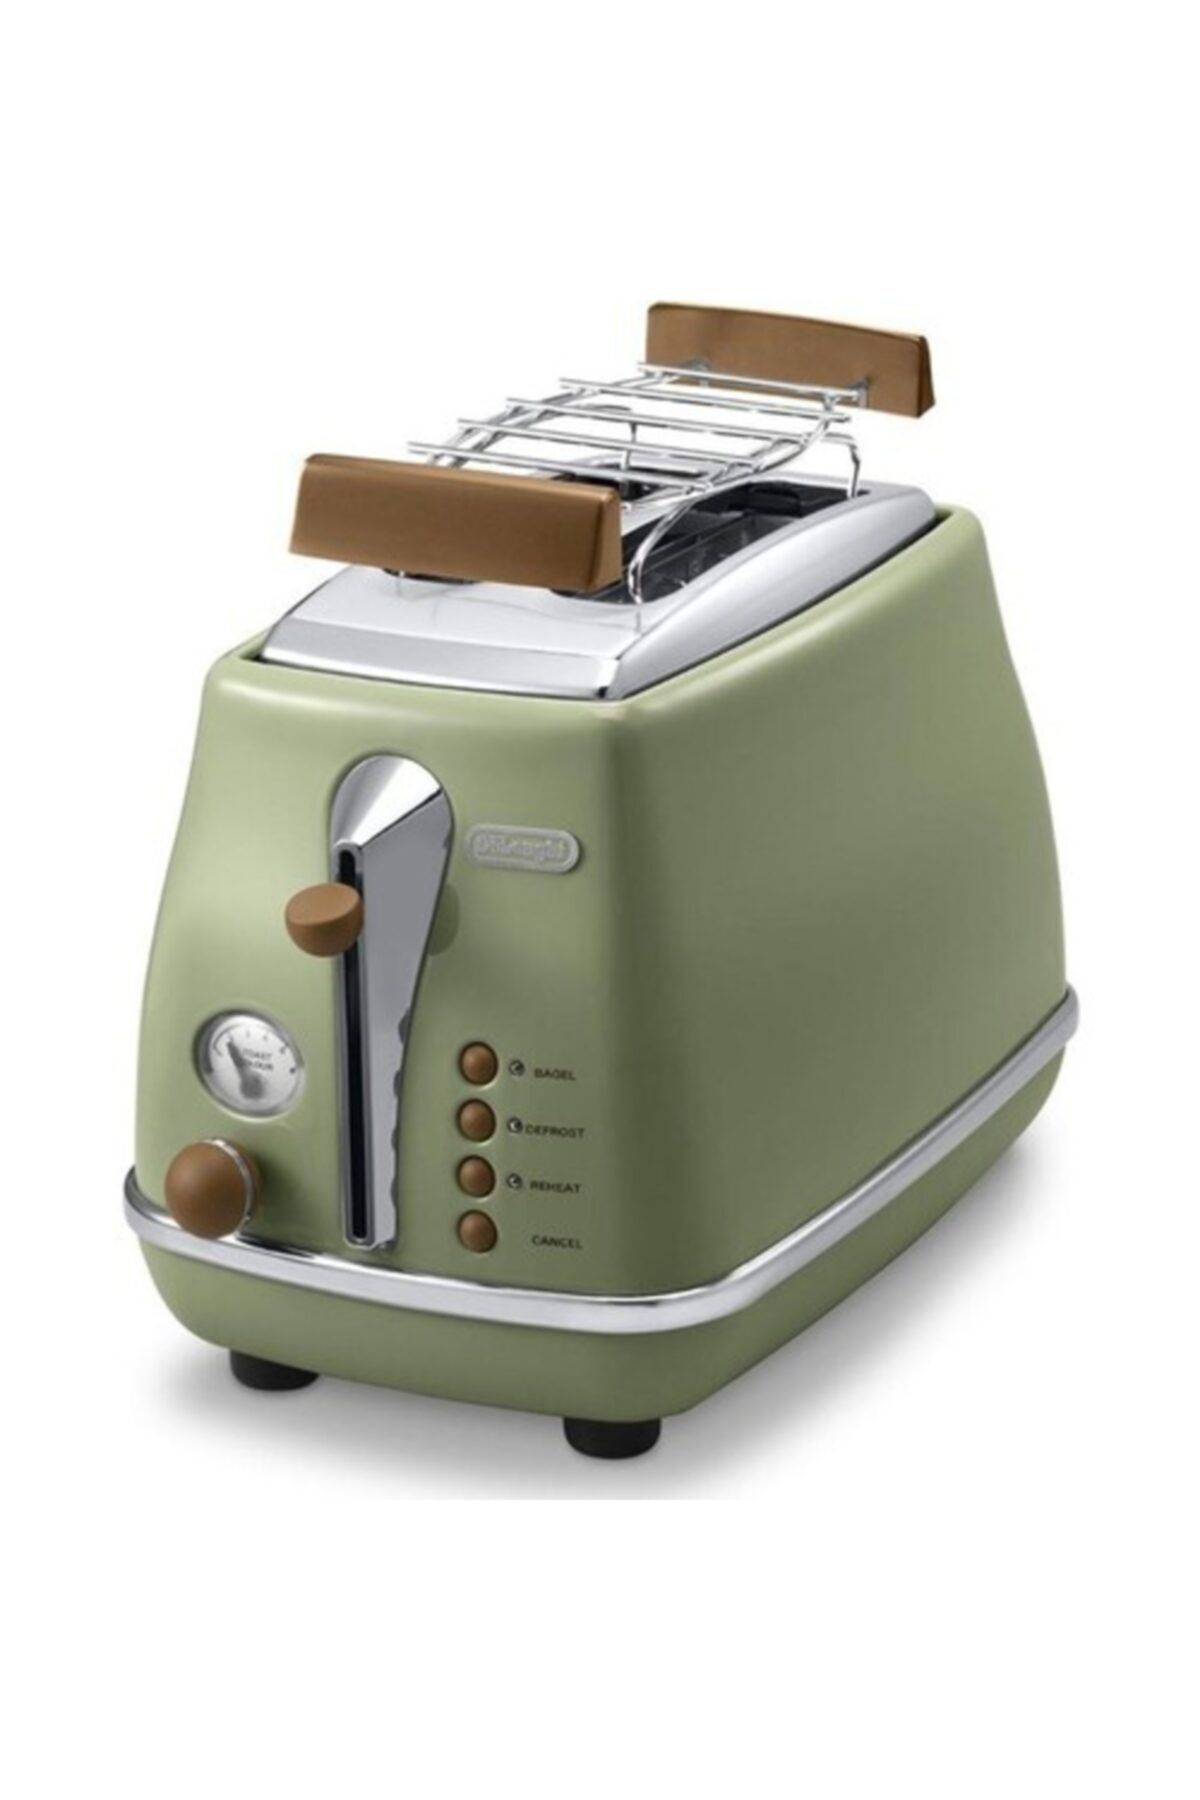 Delonghi Icona Vıntage Iki Dilim Ekmek Kızartma Makinesi Ctov 2103.gr